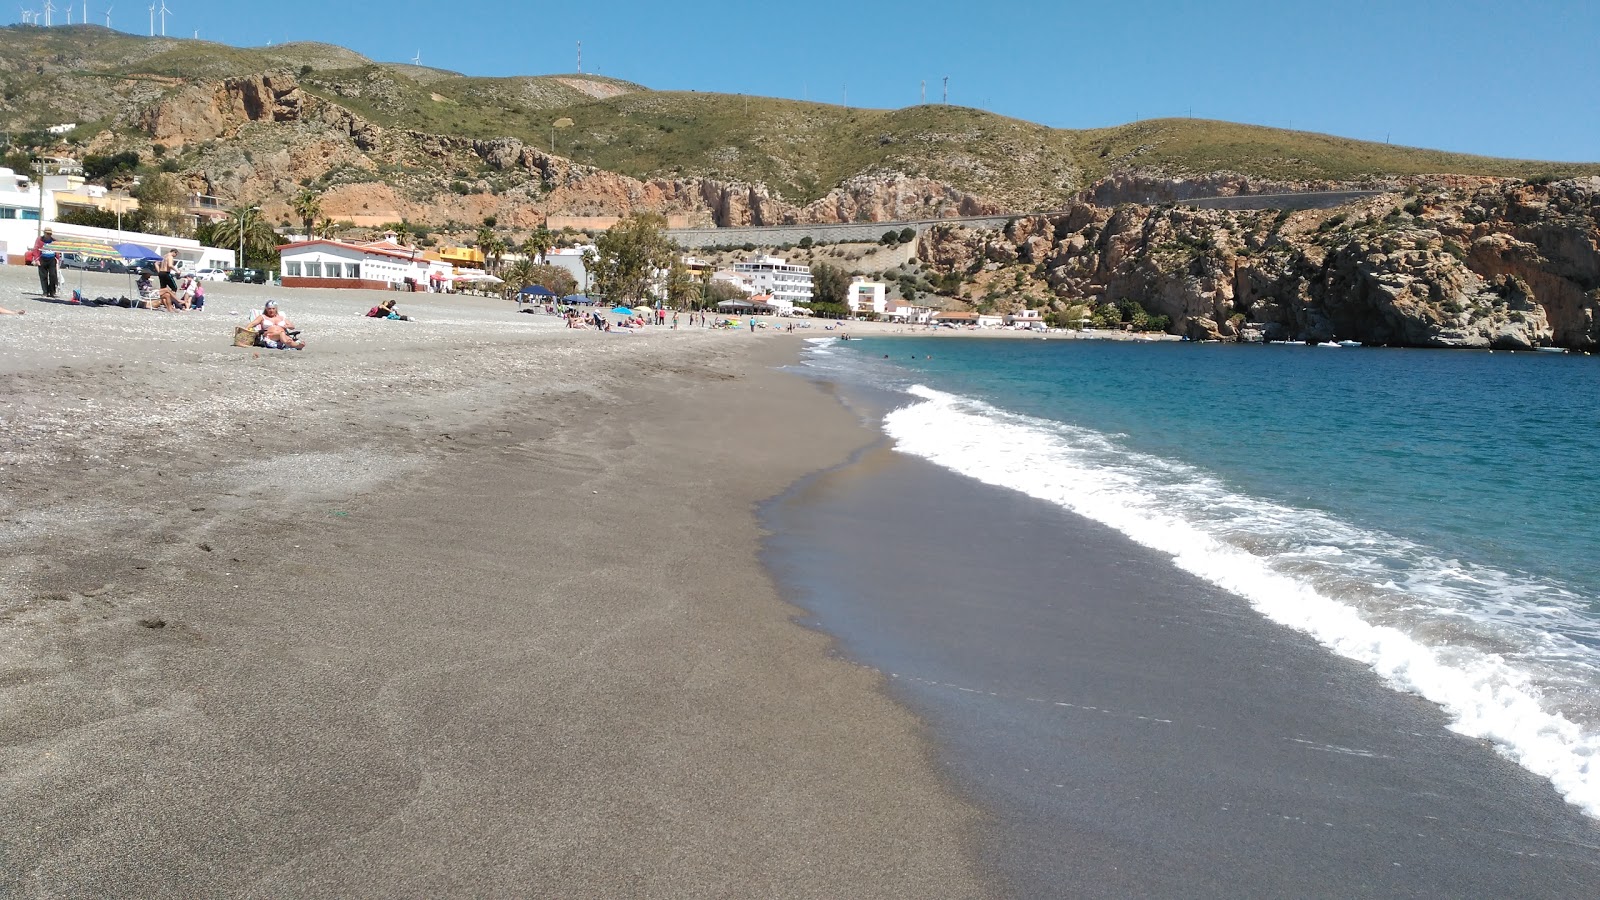 Guainos beach'in fotoğrafı hafif ince çakıl taş yüzey ile